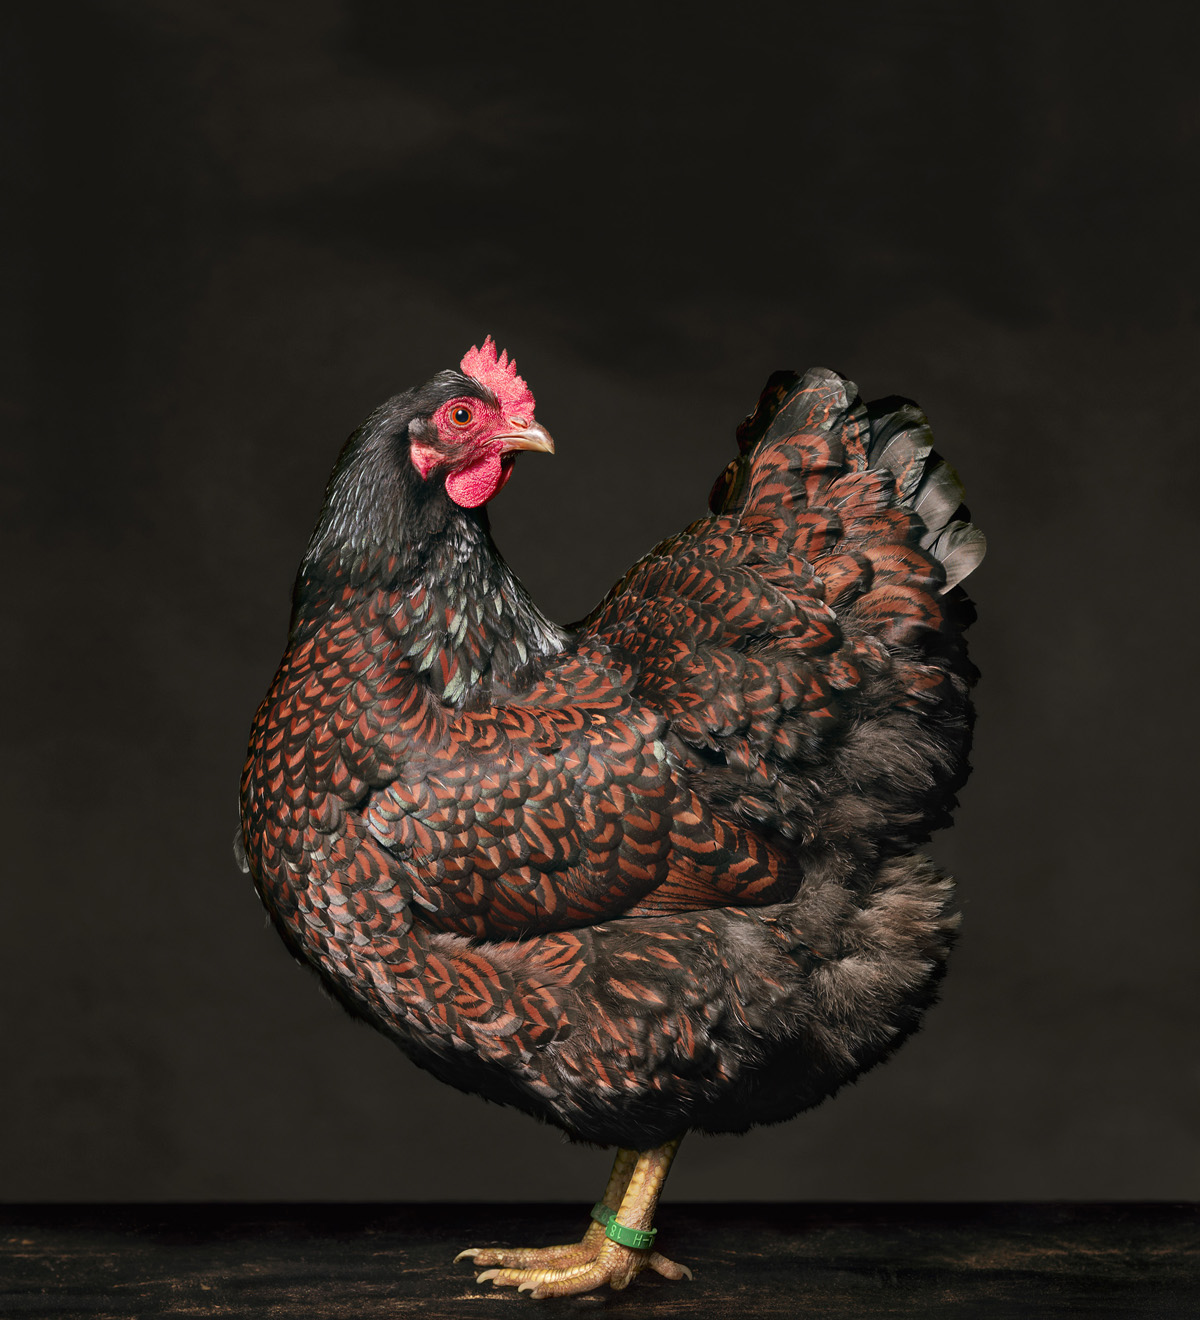 Барневельдер порода кур – описание, фото и видео